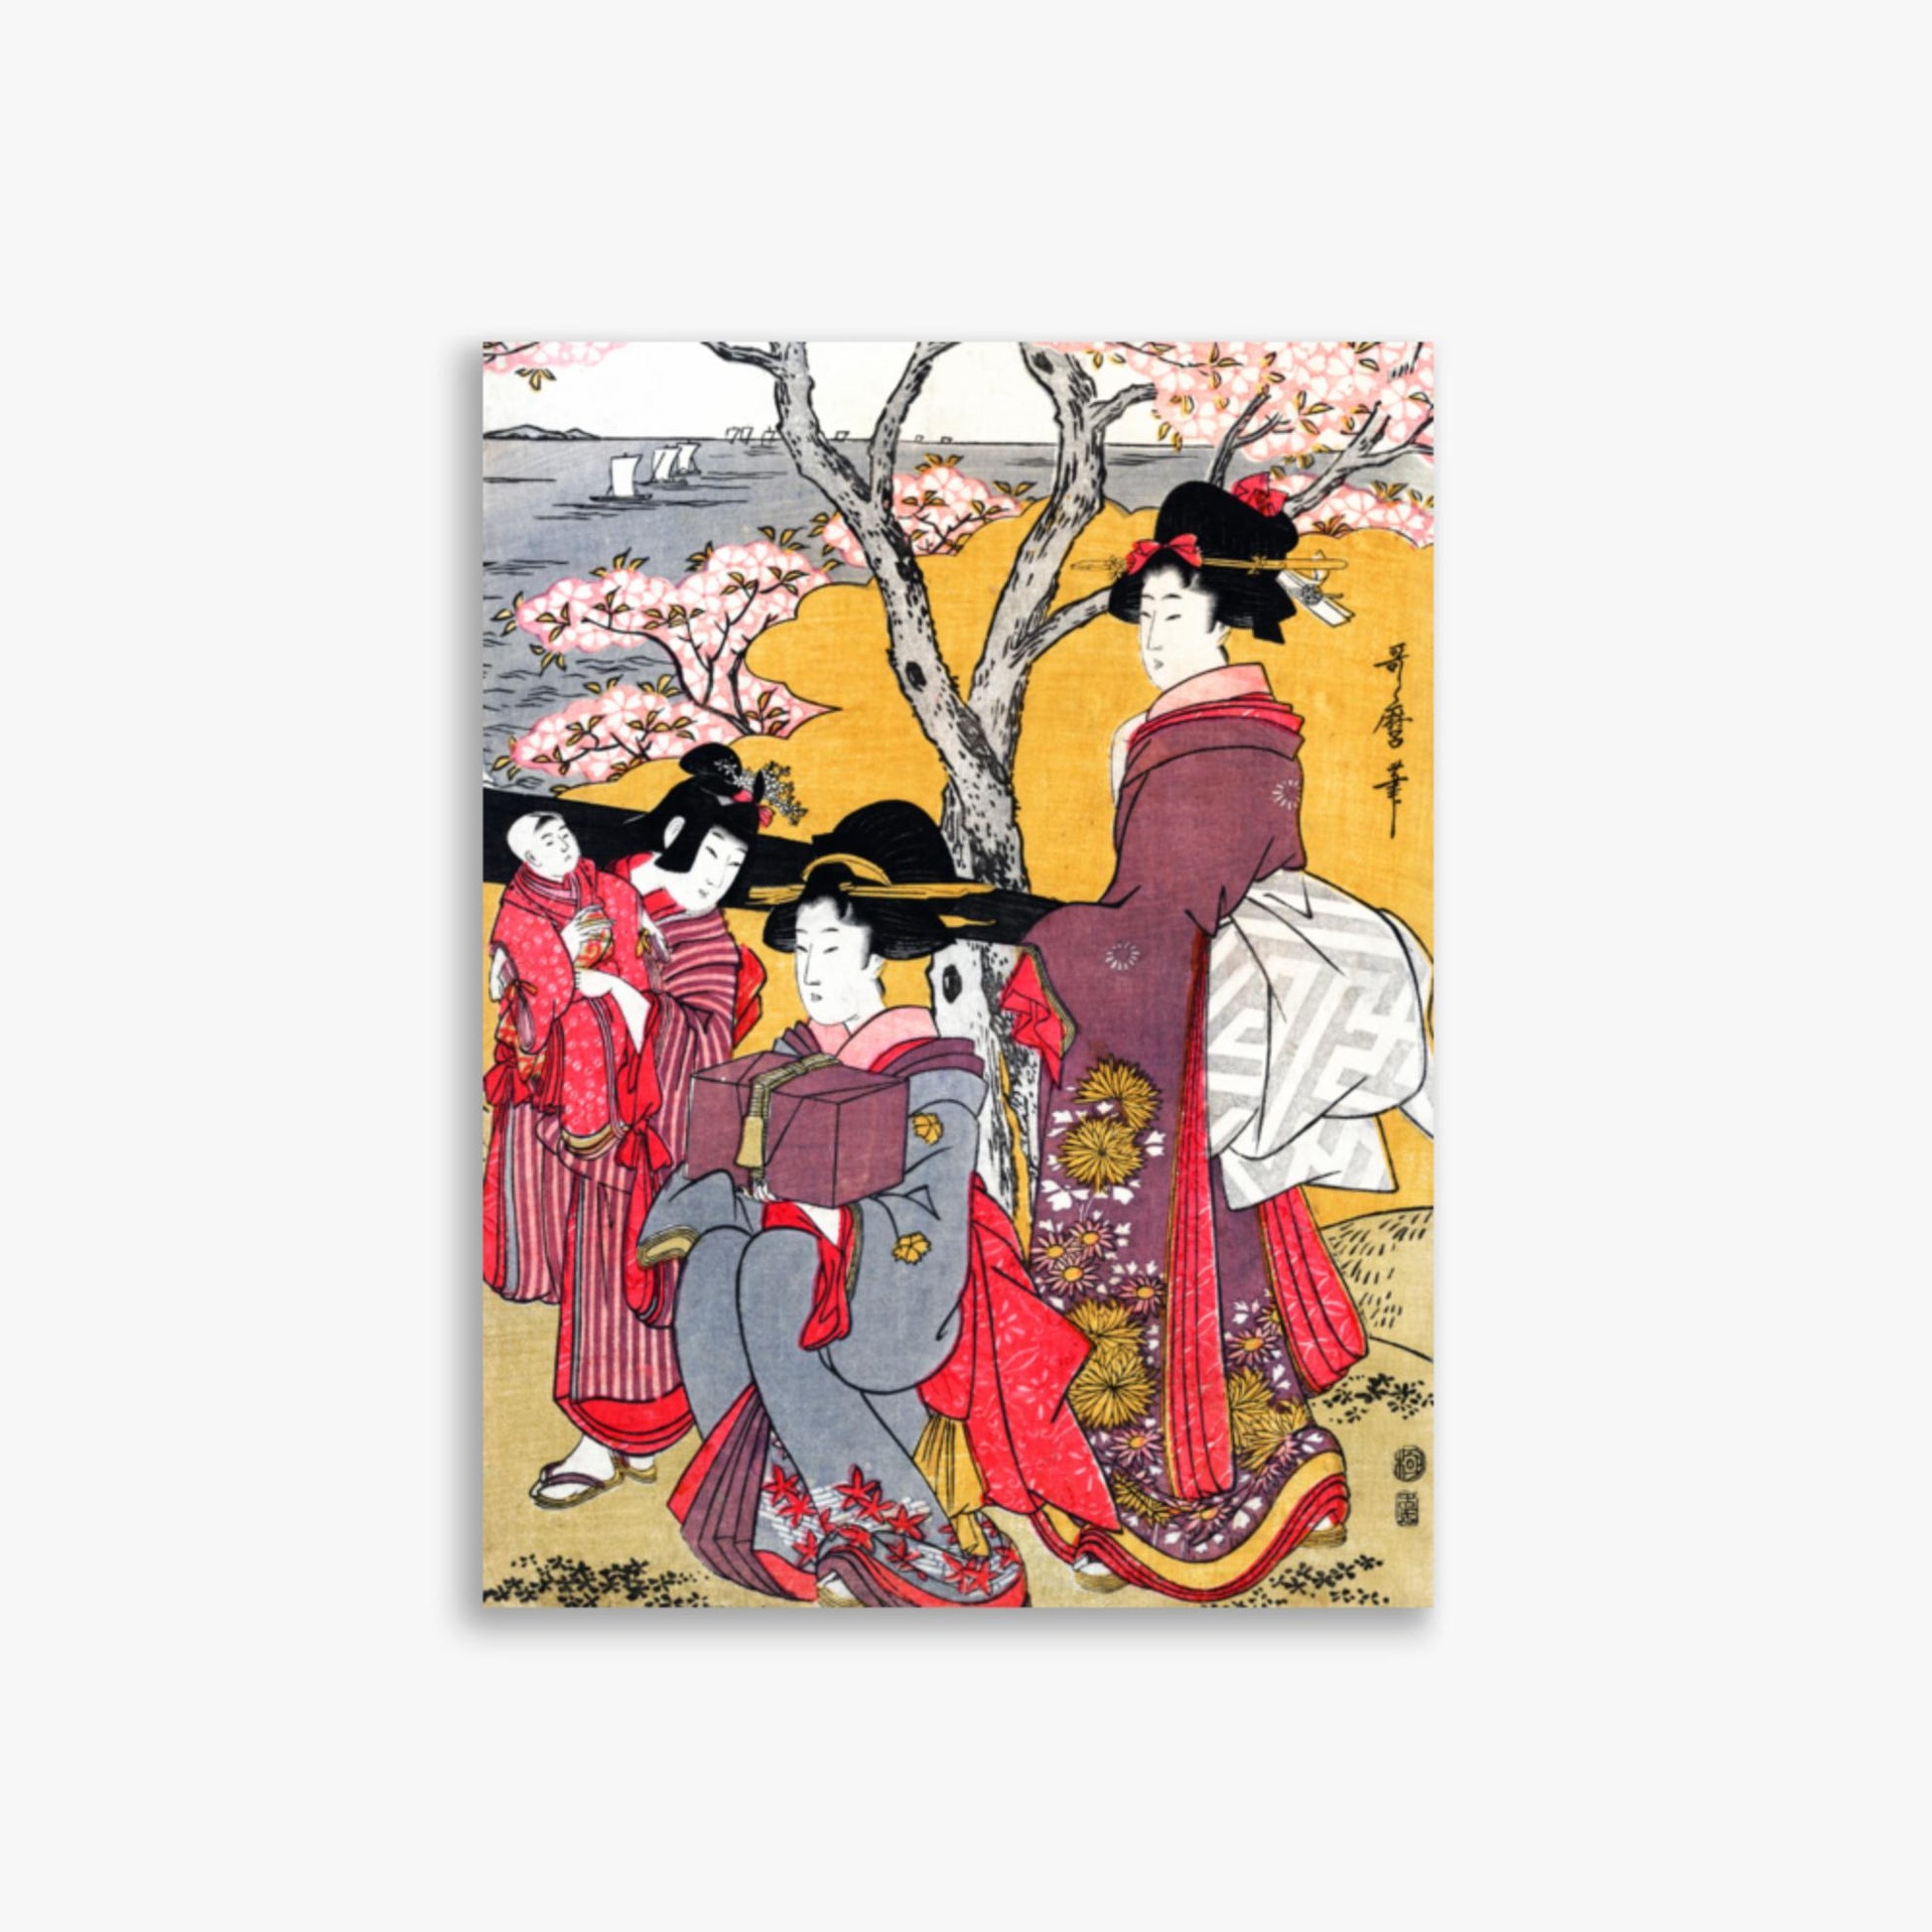 Kitagawa Utamaro - Cherry-viewing at Gotenyama 30x40 cm Poster